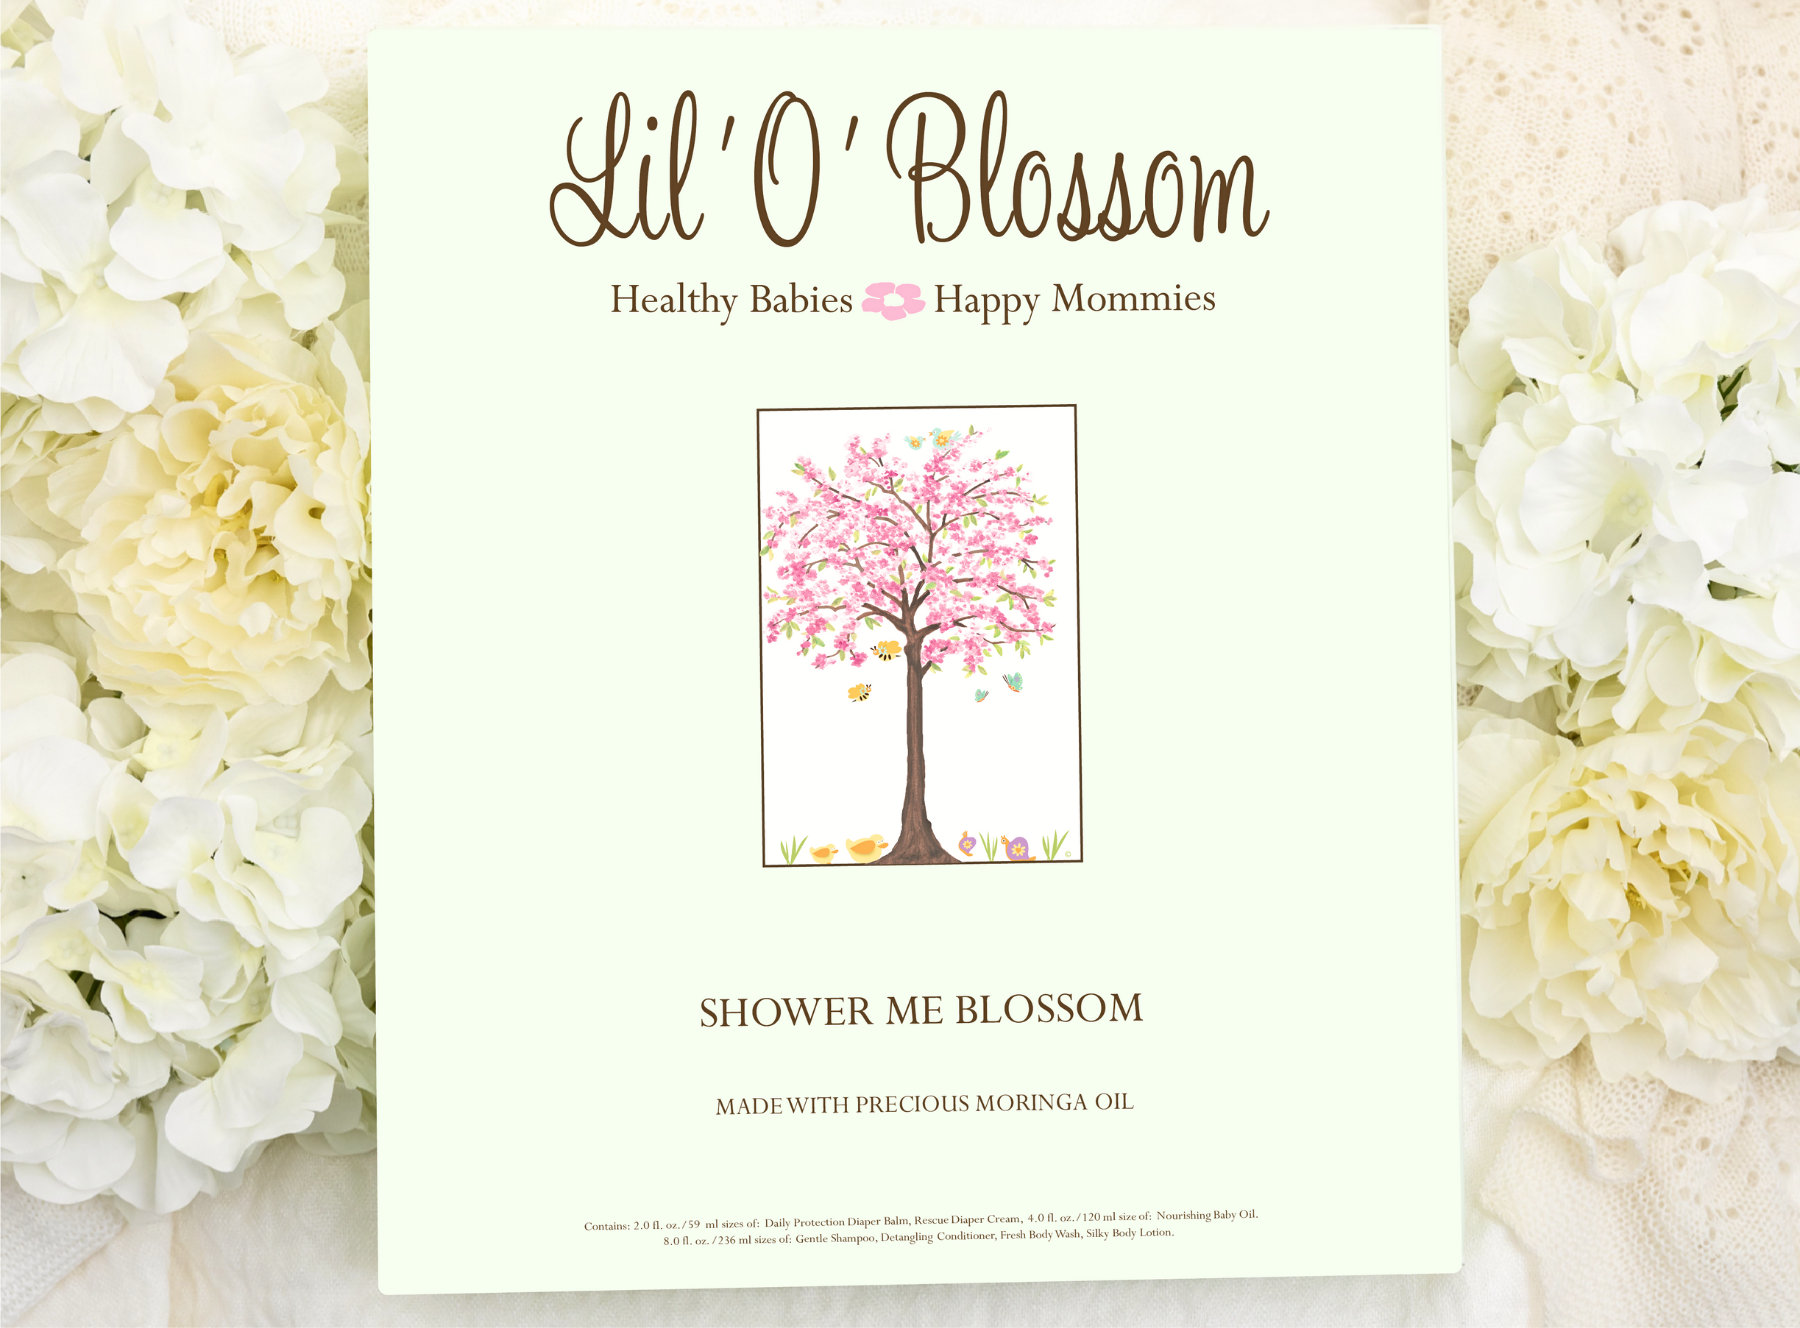 SHOWER ME BLOSSOM- 7 Piece Gift Set